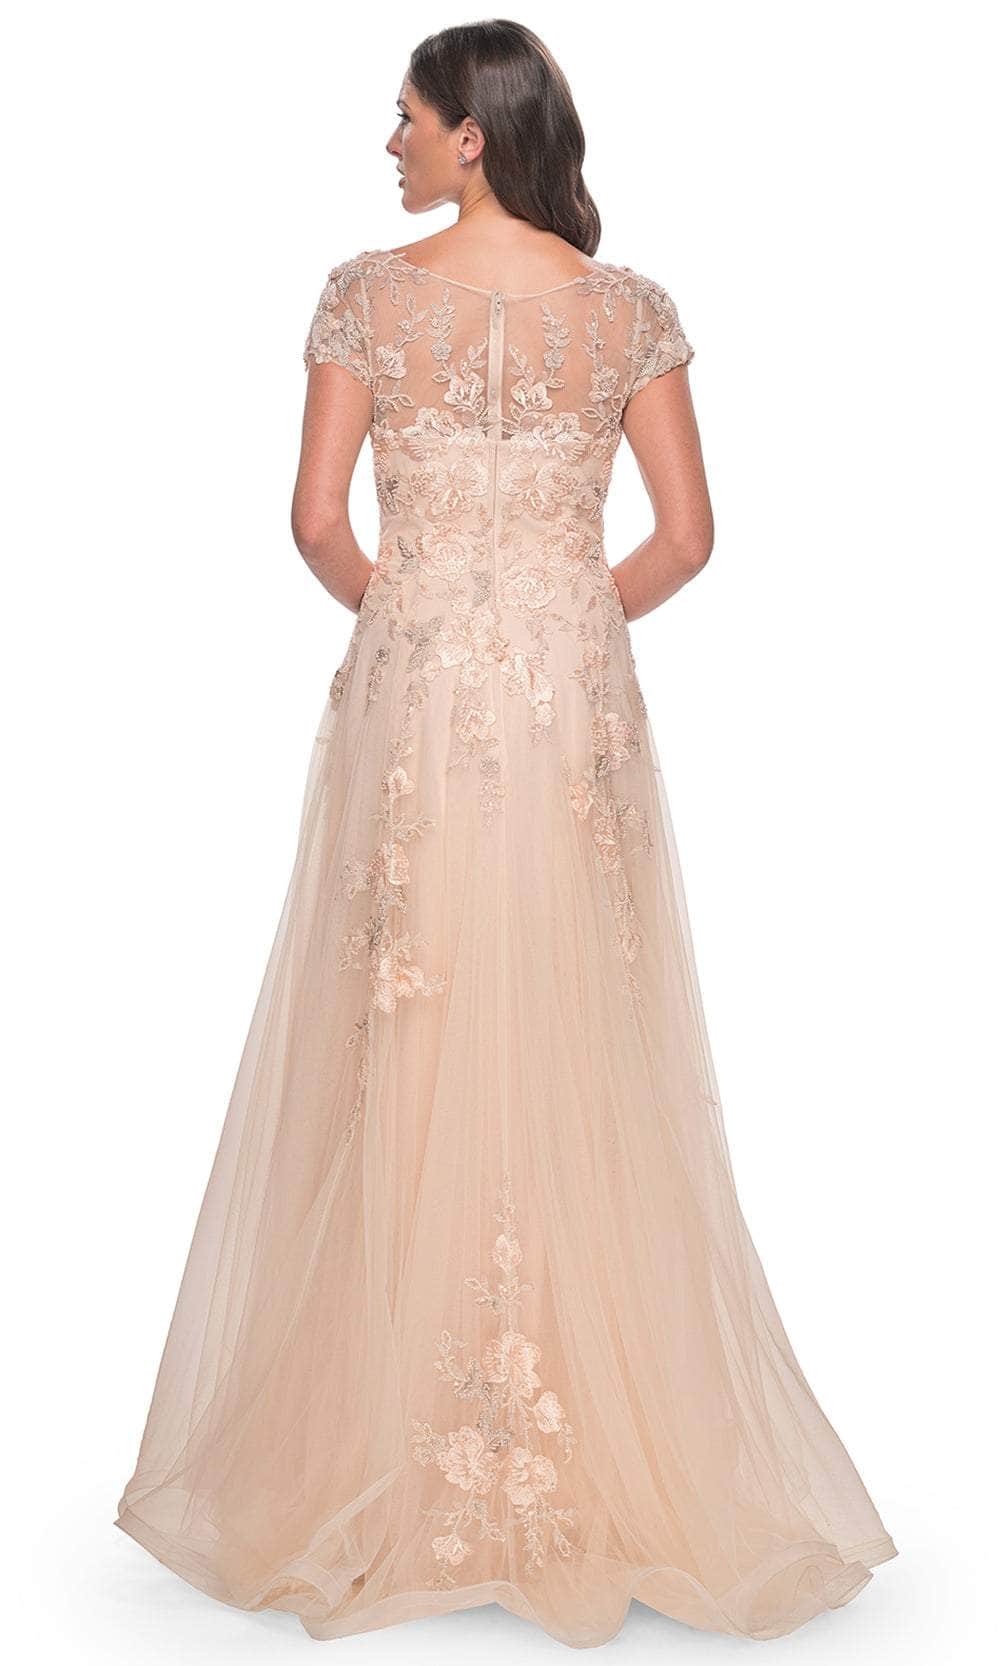 La Femme 31198 - Lace Applique Short Sleeve Gown Prom Dresses